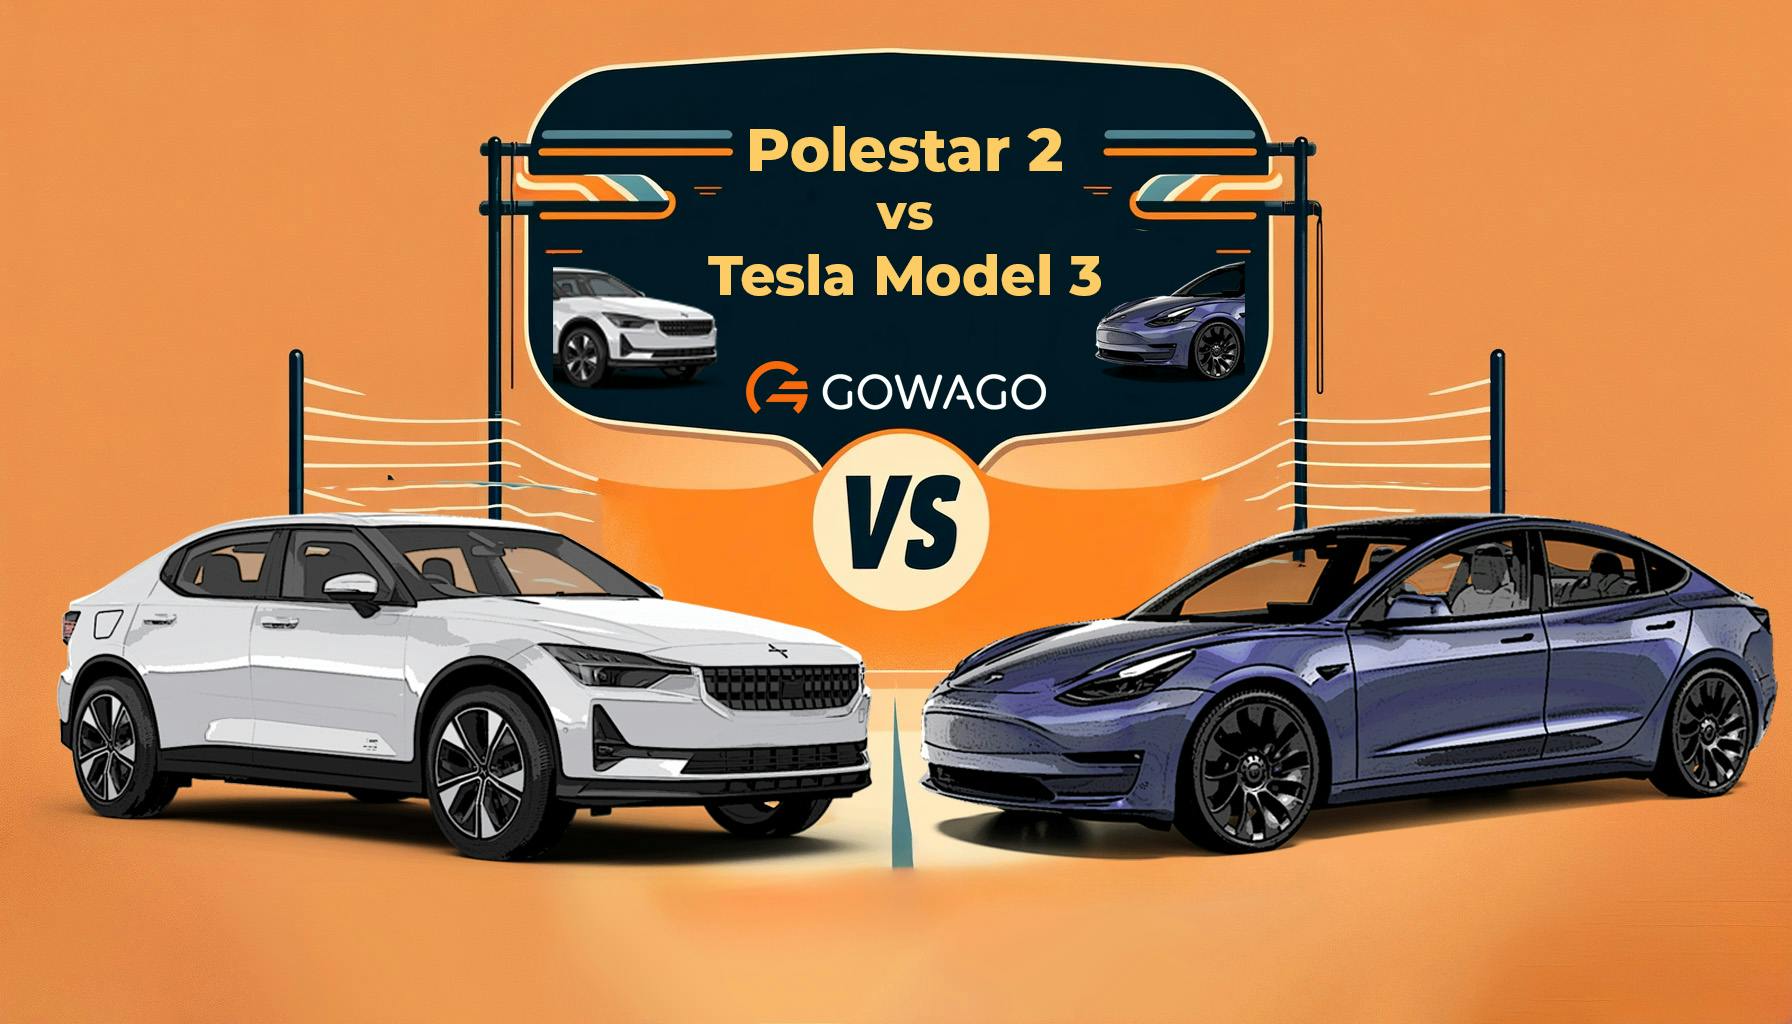 blog item card - Tesla Model 3 oder Polestar 2? Für welches Elektroauto solltest du dich entscheiden? gowago gibt dir einen Überblick! Leasingpreise ✅ Ausstattung ✅ Fahrerlebnis ✅